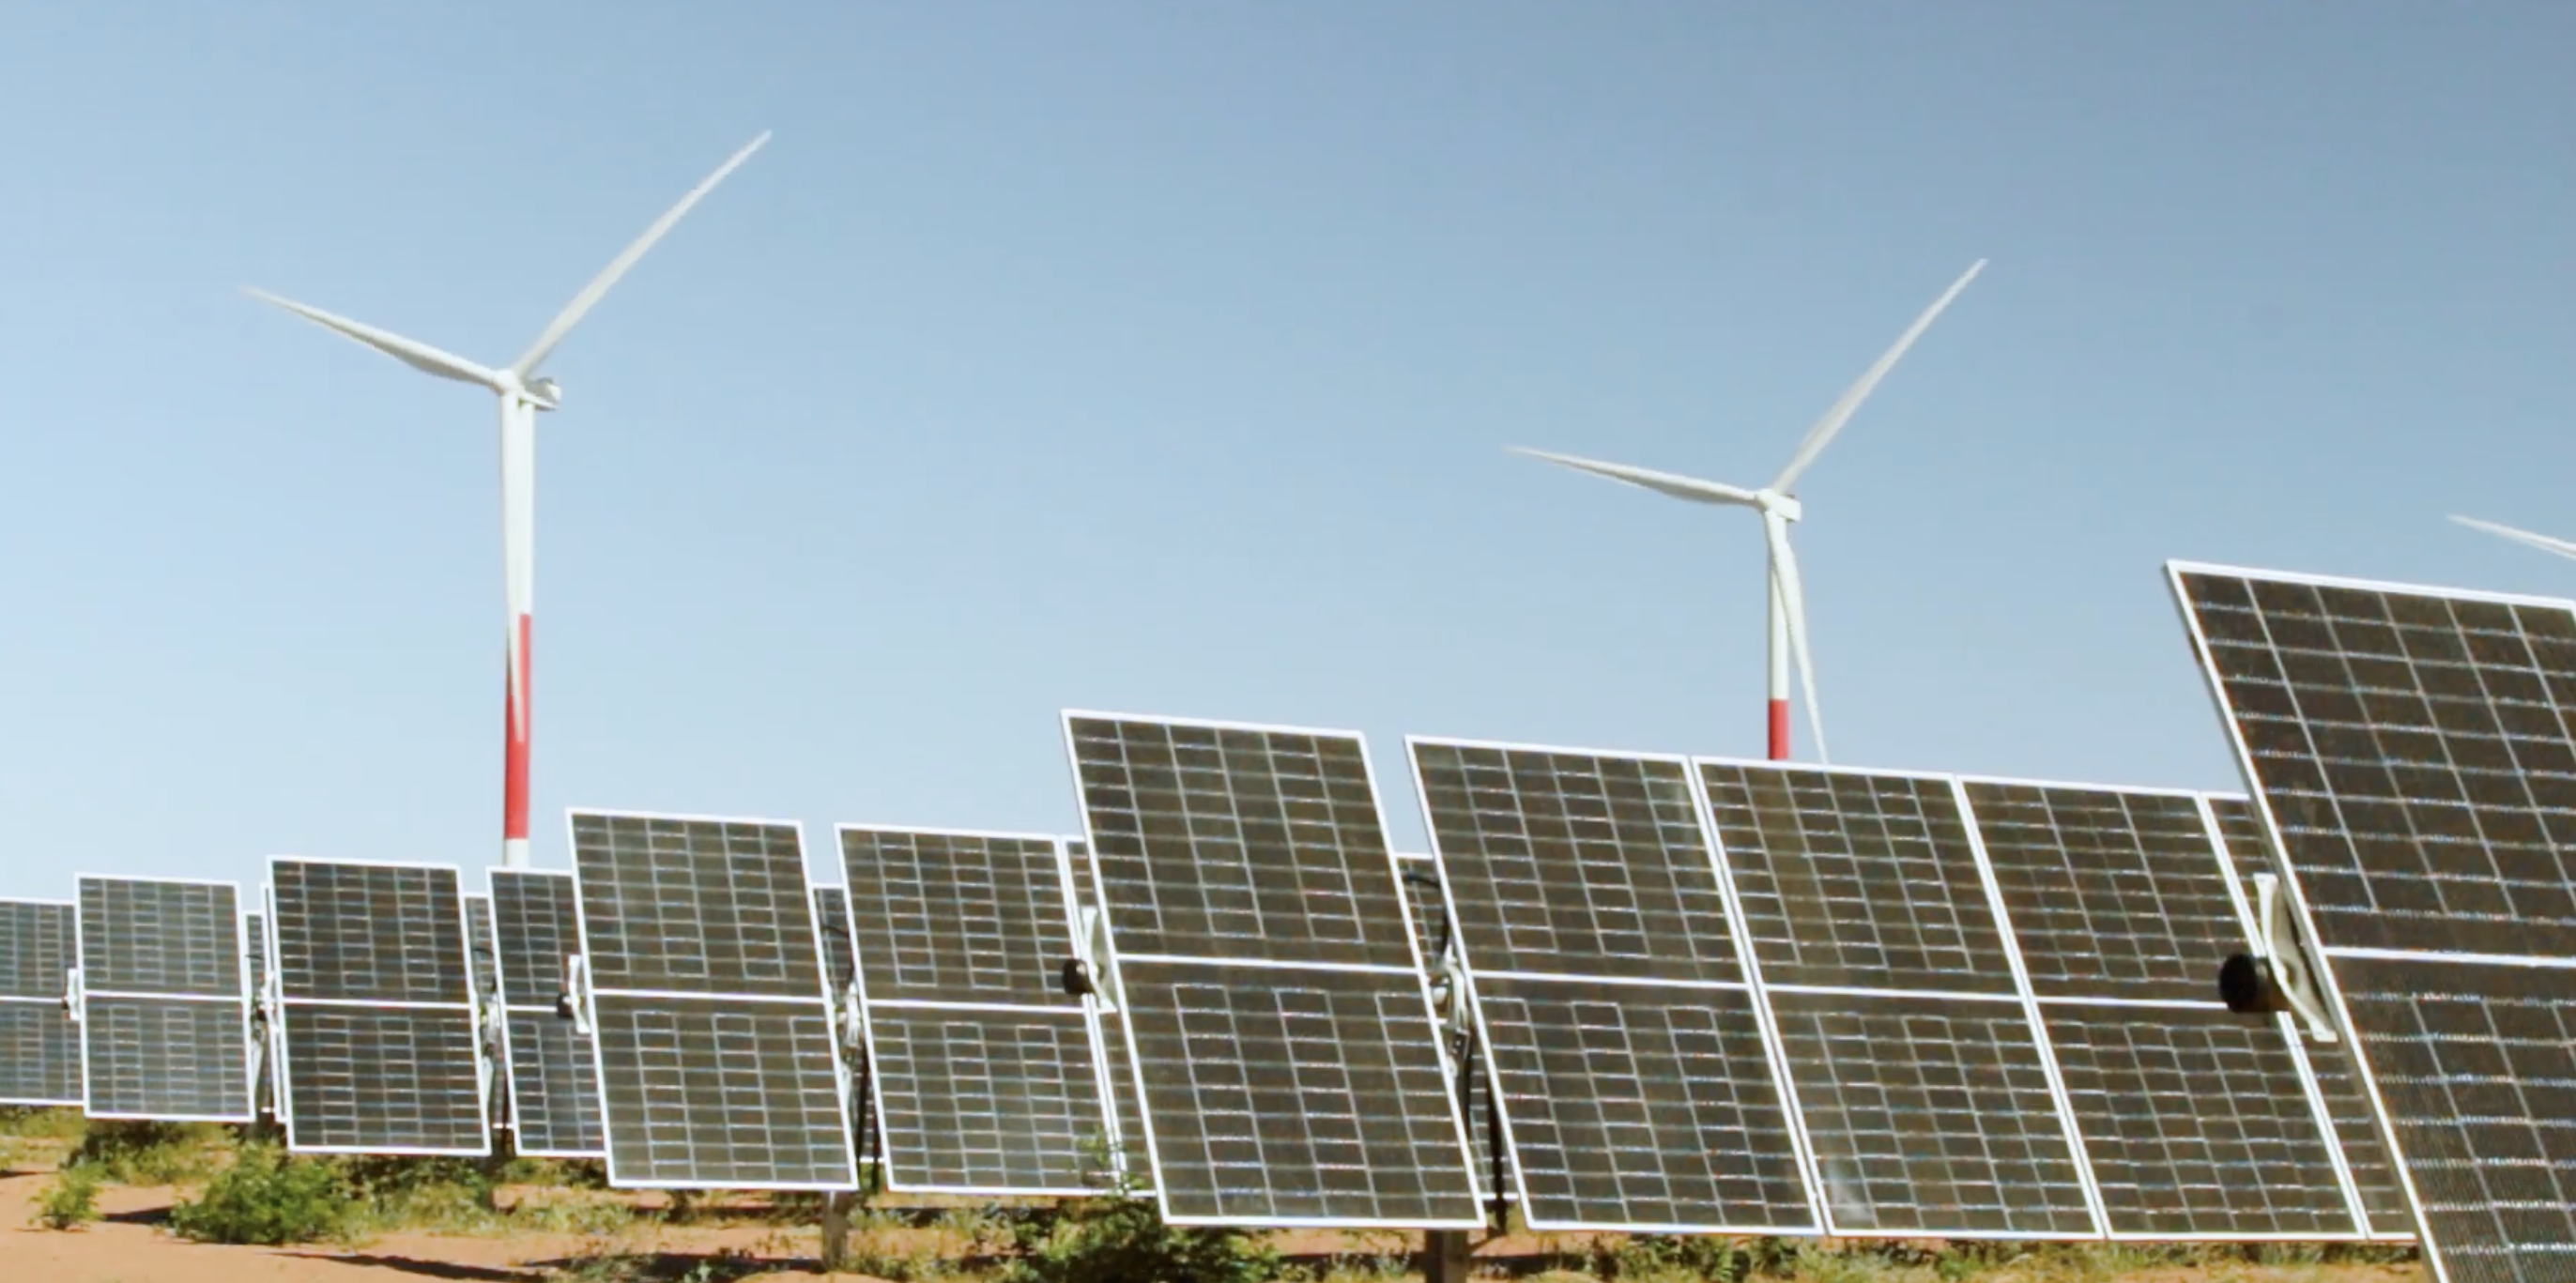 Taxa de crescimento de demanda global por eletricidade deve cair em 2023, projeta IEA. Na imagem: Usina solar fotovoltaica Serra do Mel da Voltalia, com painéis na vertical e turbinas eólicas ao fundo (Foto: Divulgação)